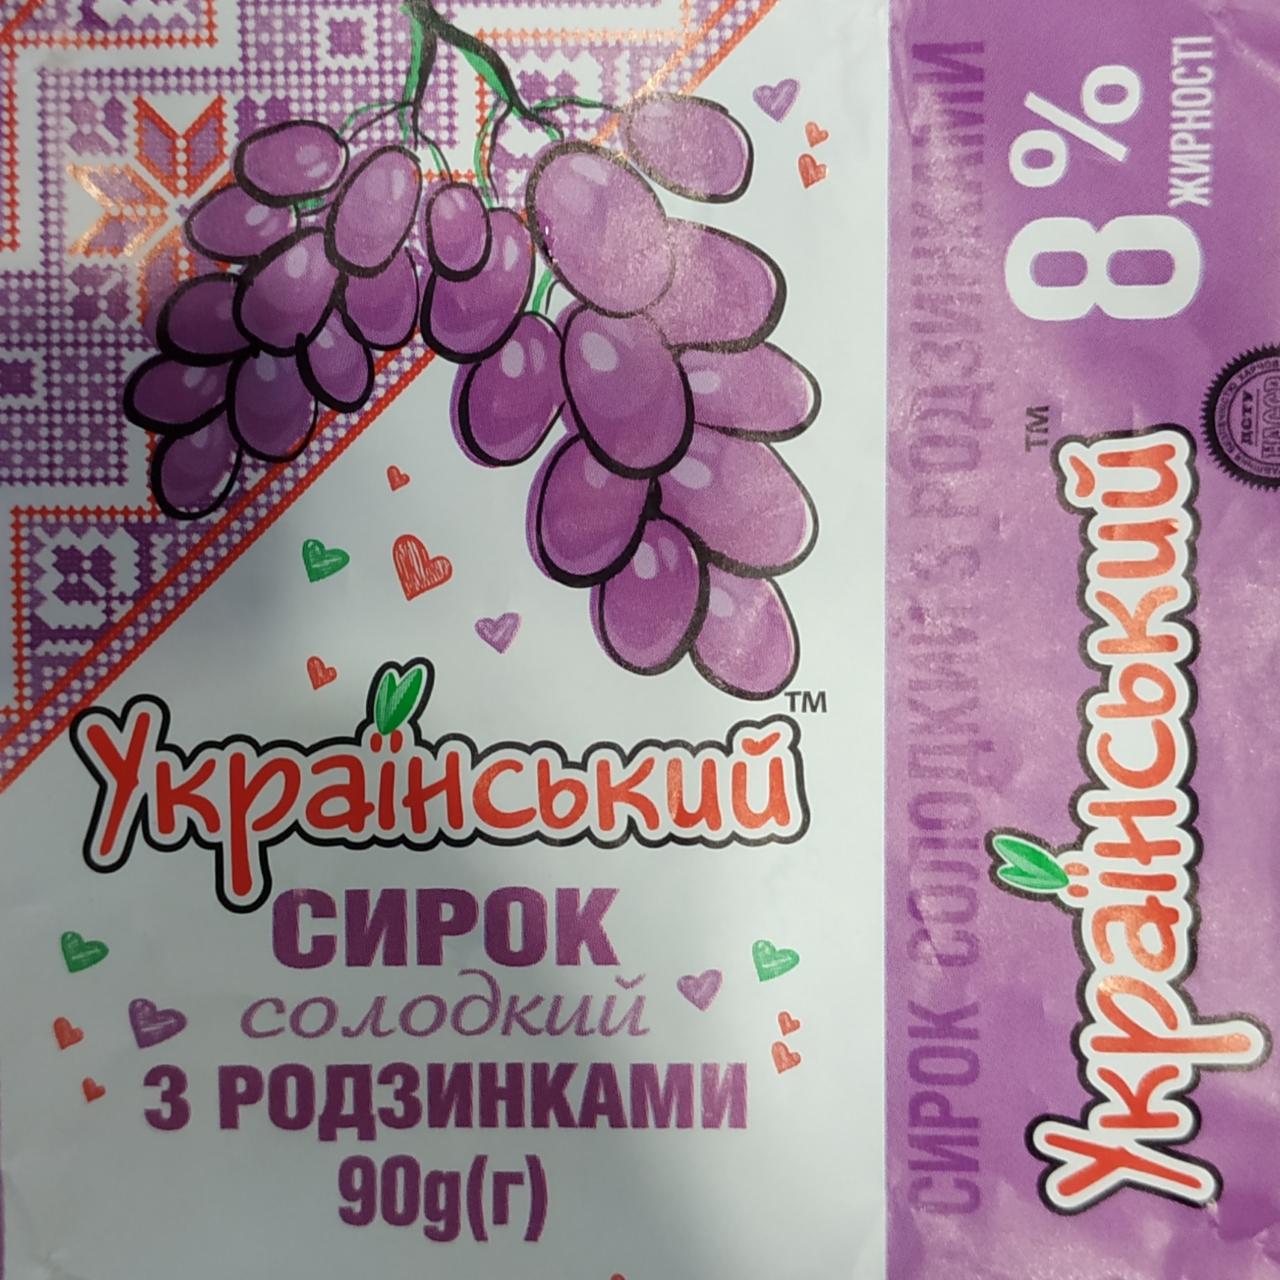 Фото - Сирок солодкий з родзинками 8 % жирності Український